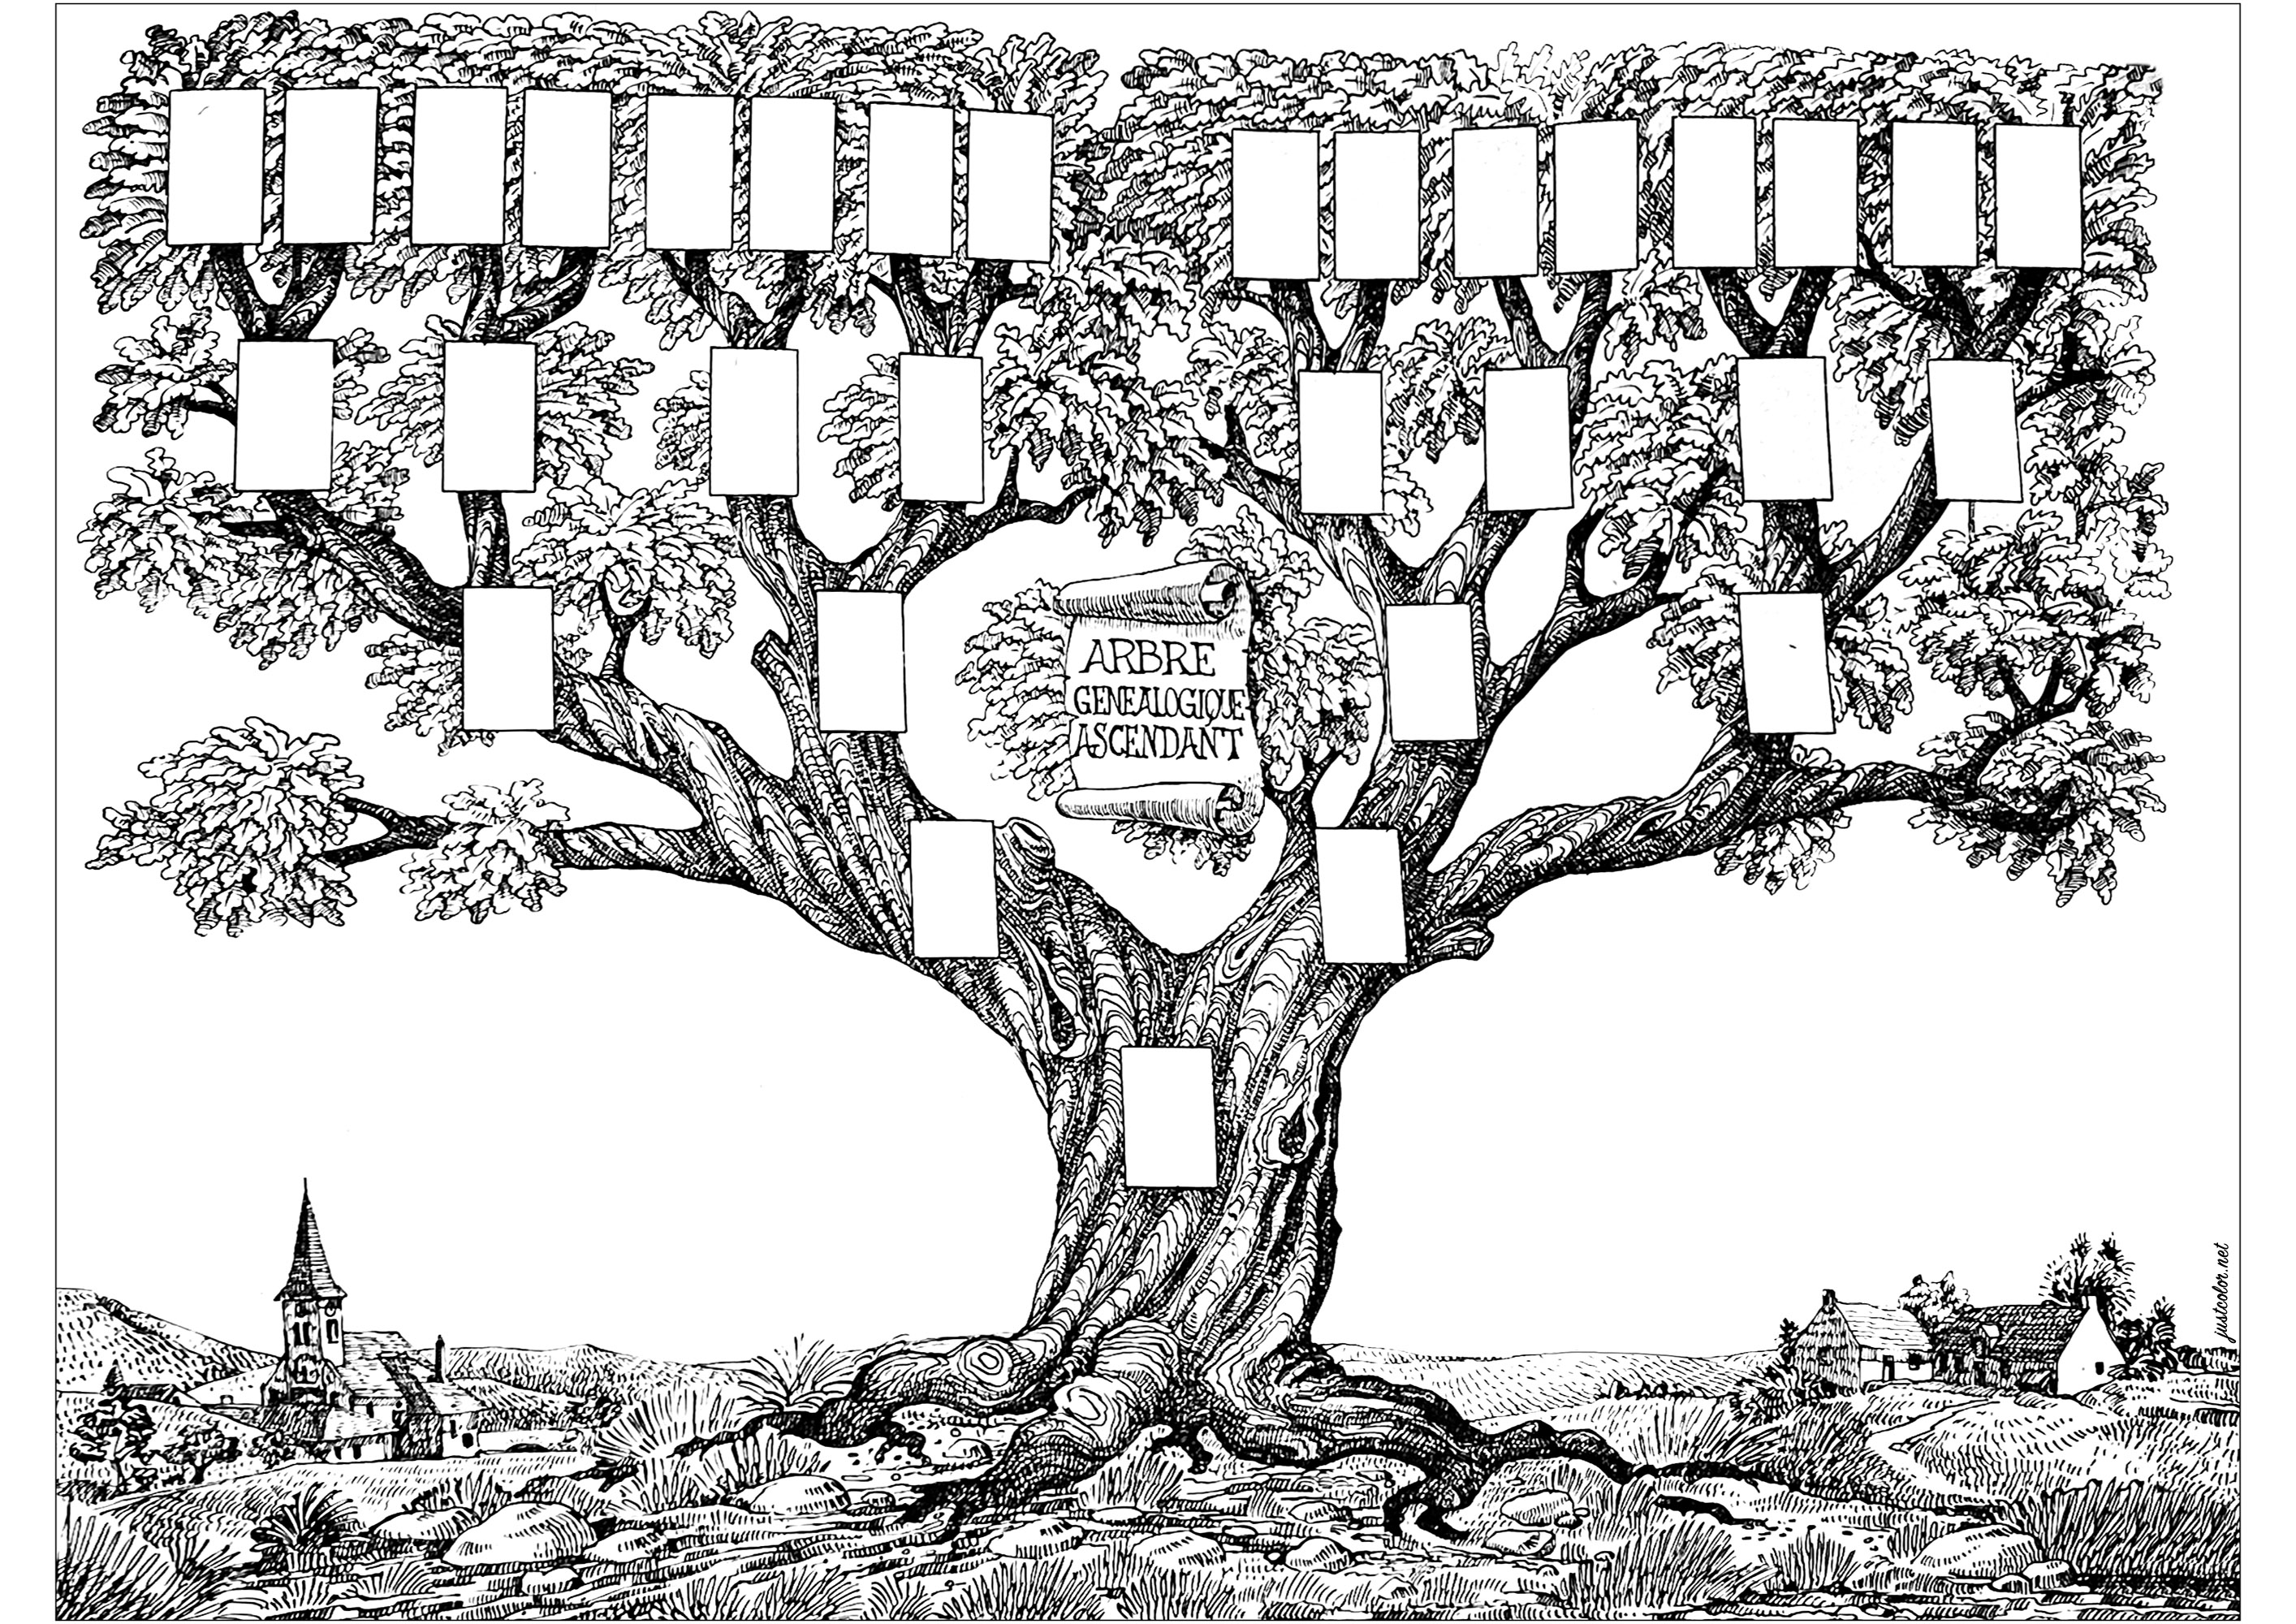 Ilustração vintage representando uma árvore genealógica. Colora esta bela árvore genealógica, que é um desenho do início do século XX de um ilustrador francês.Podes até colar nela fotografias dos teus familiares!